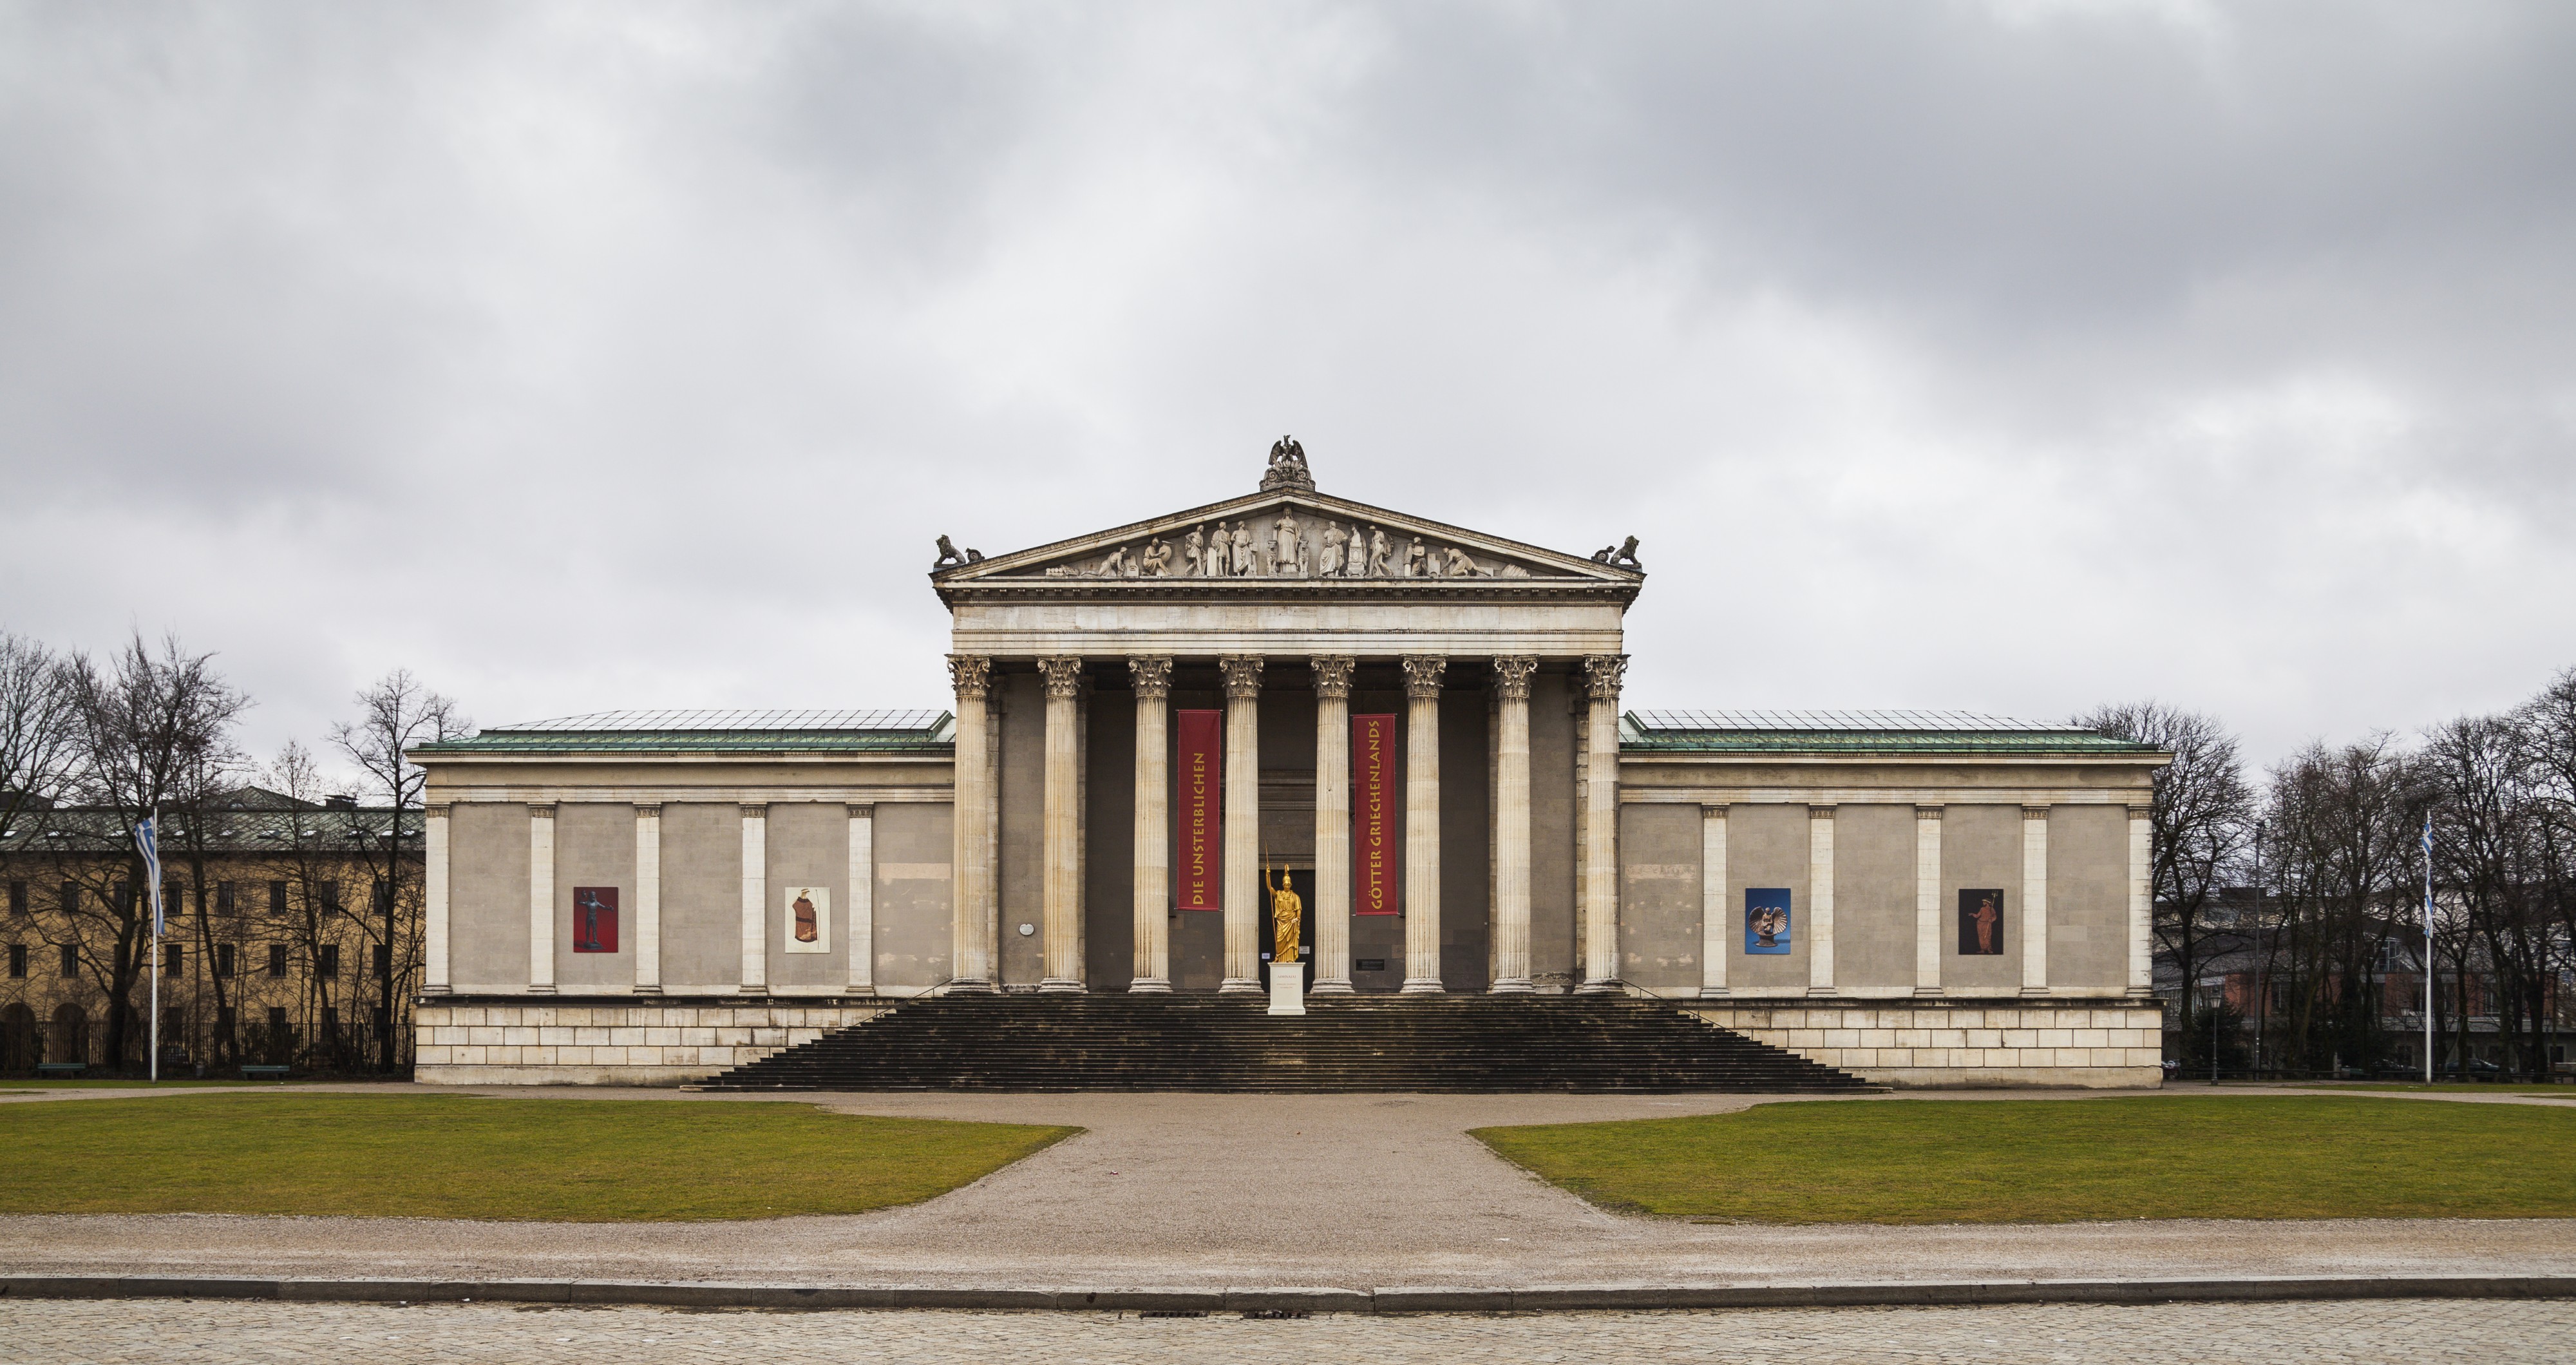 Colección Estatal de Antigüedades, Múnich, Alemania, 2013-02-03, DD 01